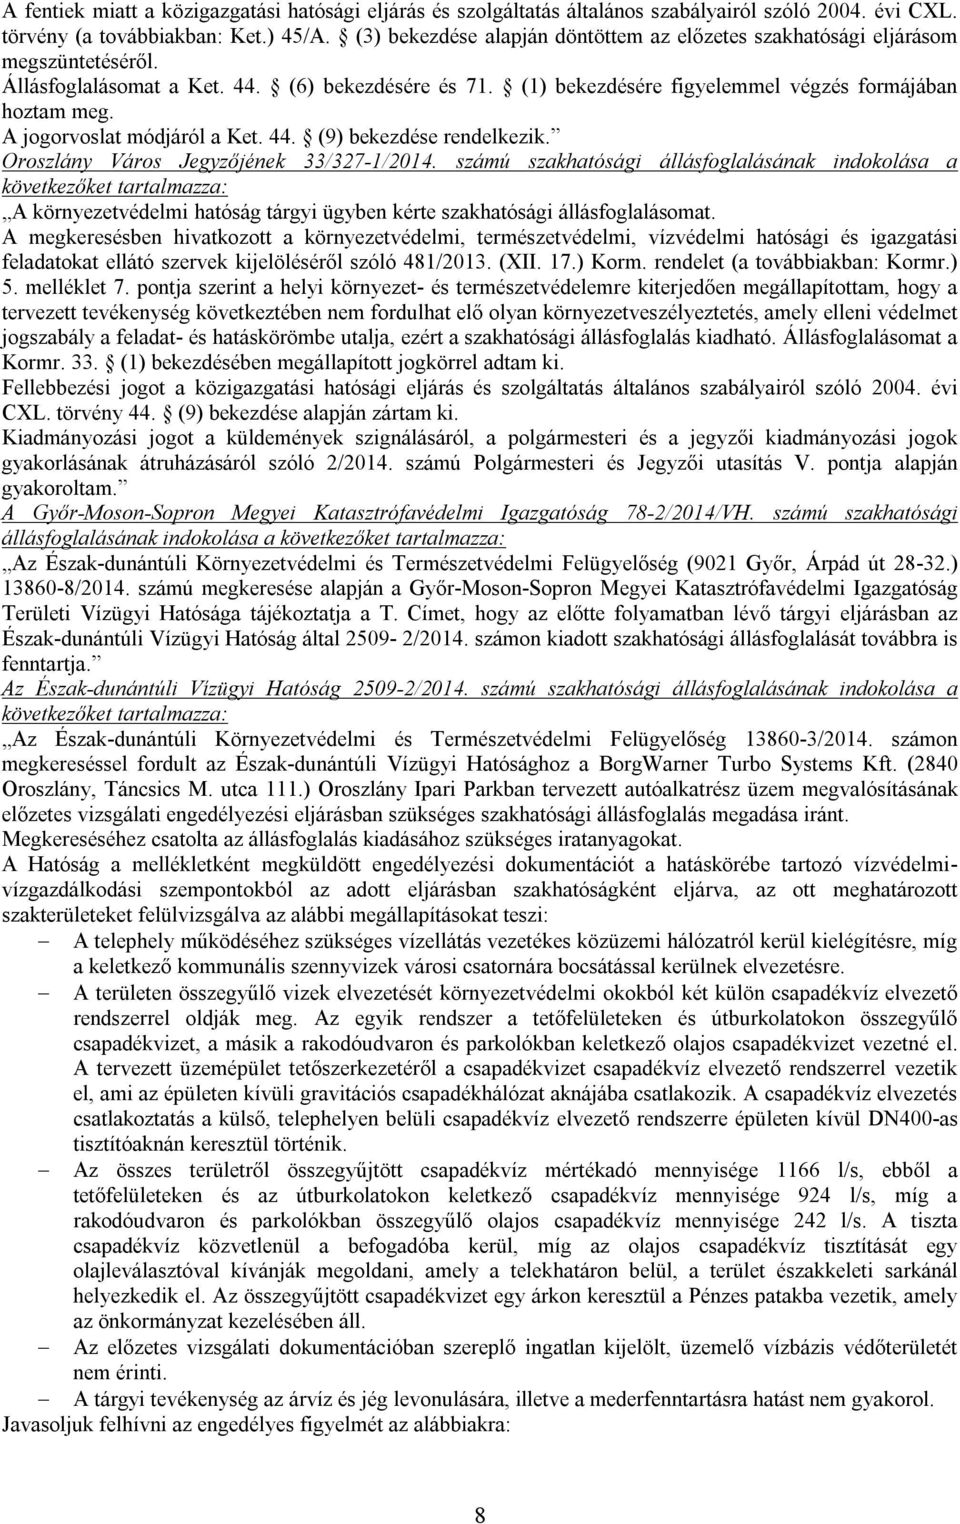 A jogorvoslat módjáról a Ket. 44. (9) bekezdése rendelkezik. Oroszlány Város Jegyzőjének 33/327-1/2014.